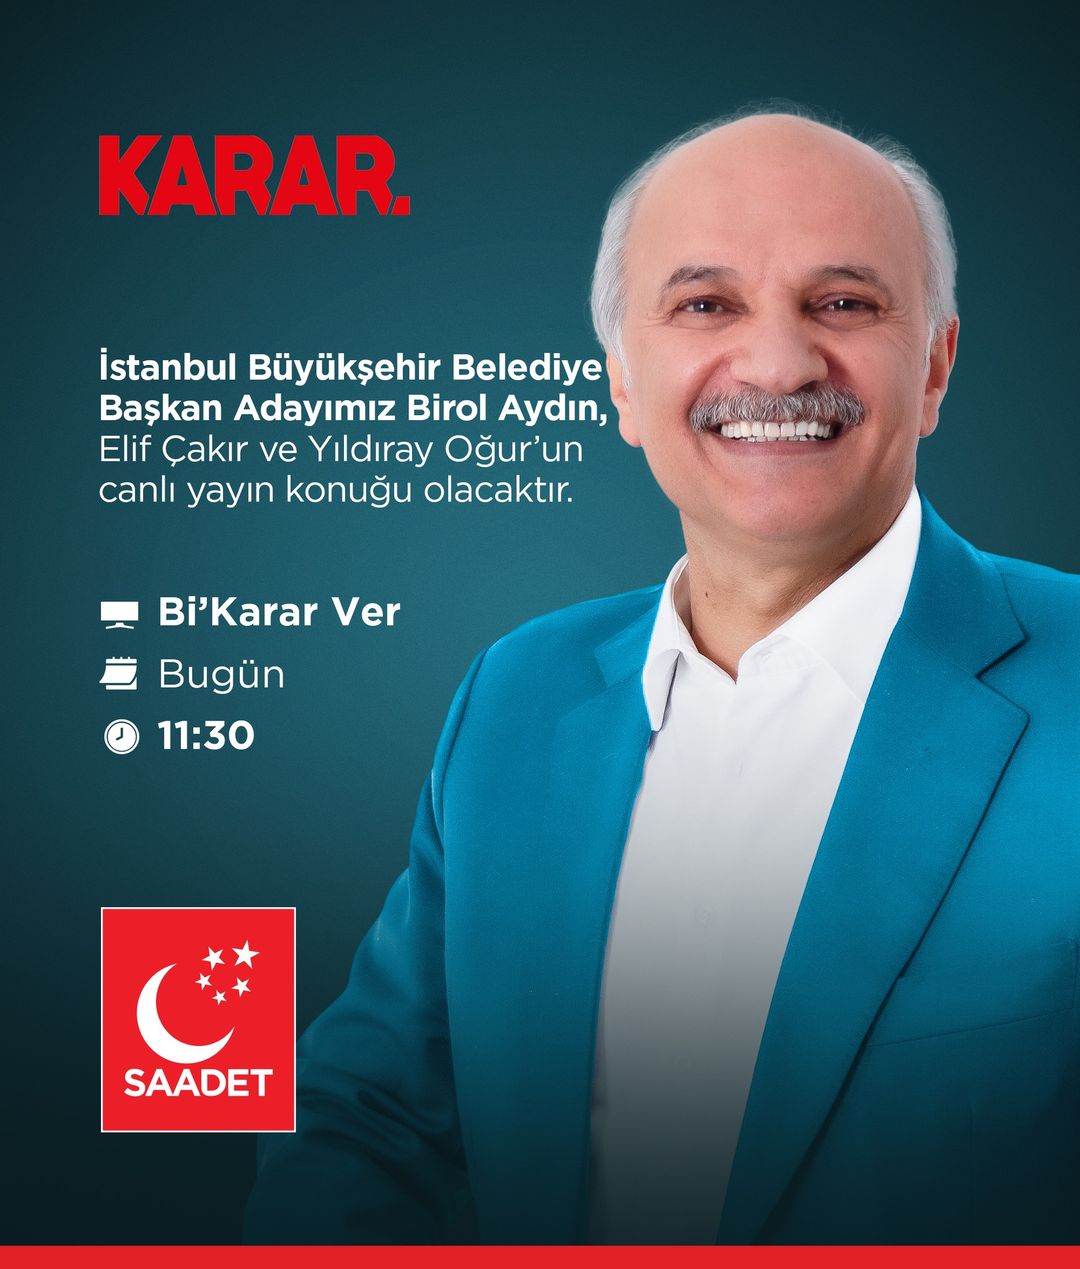 Birol Aydın, İstanbul Büyükşehir Belediye Başkanlığı adaylık sürecinde planlarını ve projelerini anlattı.